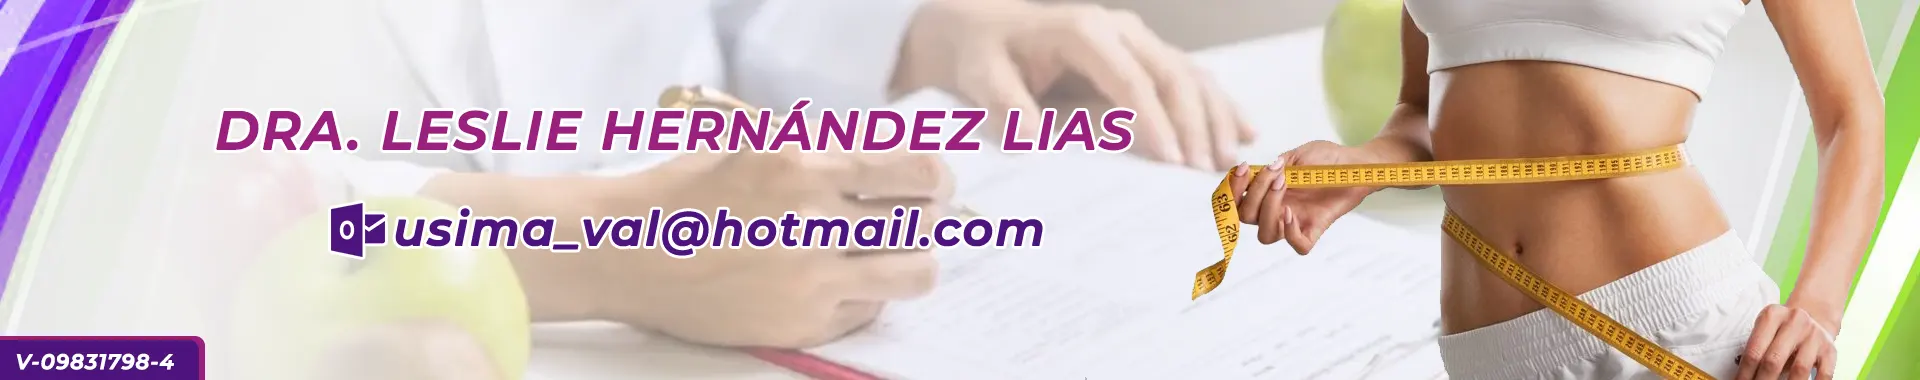 Imagen 1 del perfil de Dra. Leslie Hernandez Lias